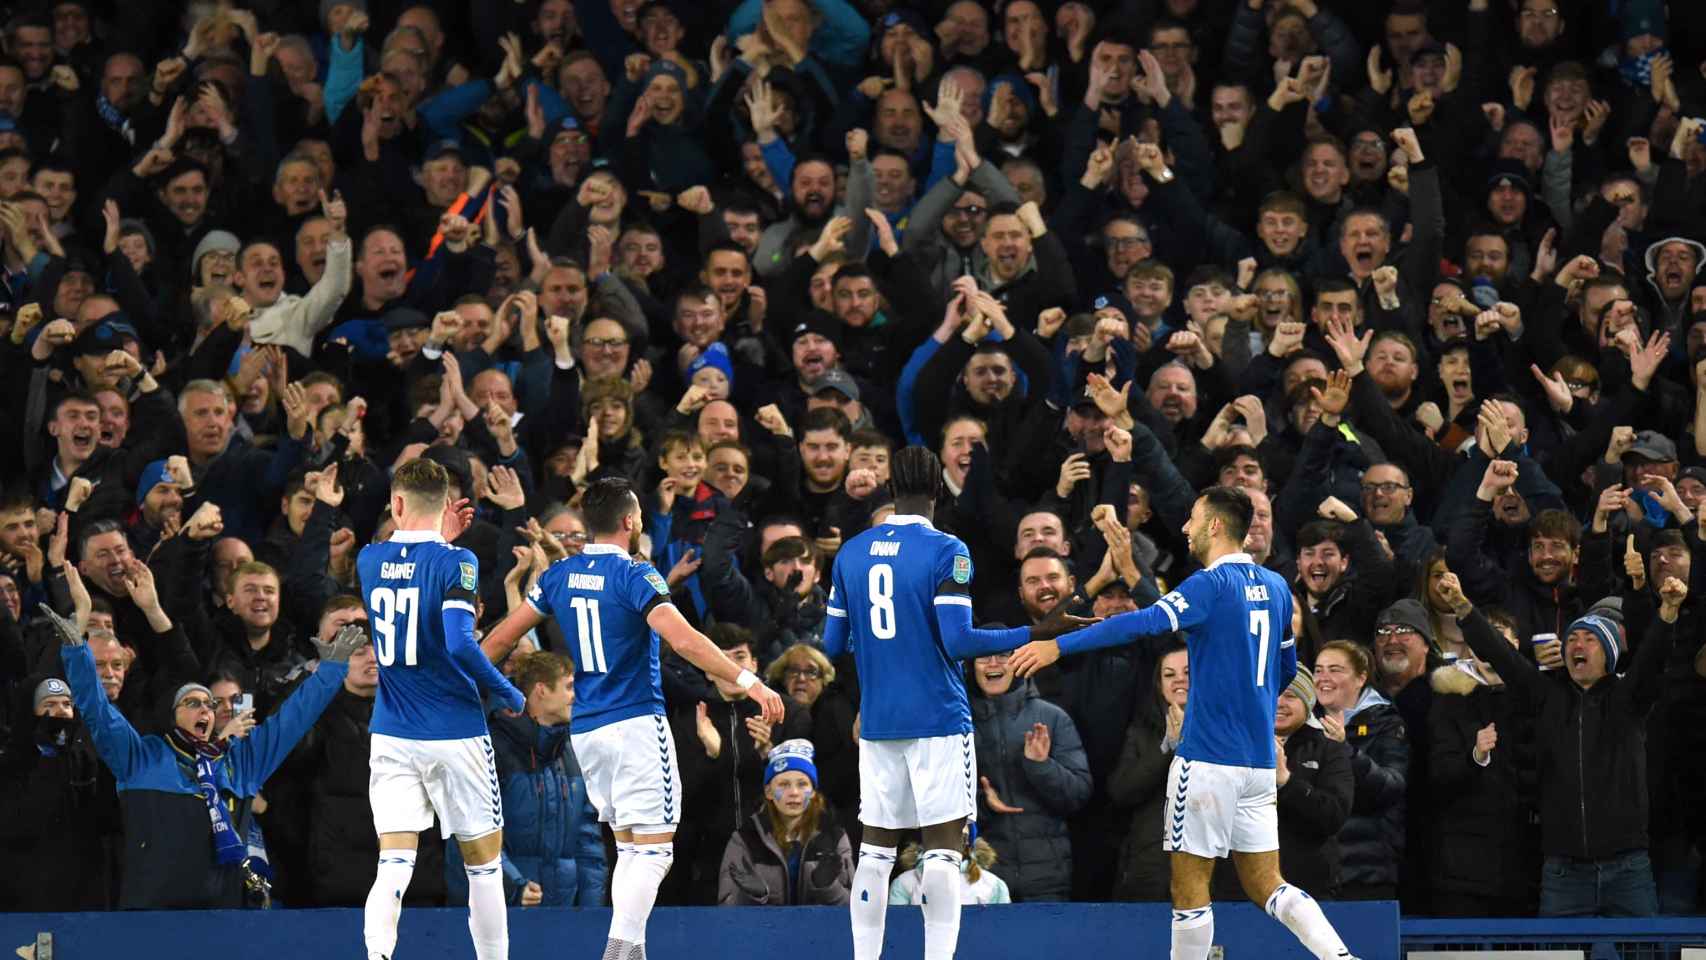 Los aficionados del Everton aplauden a los jugadores tras marcar un gol.